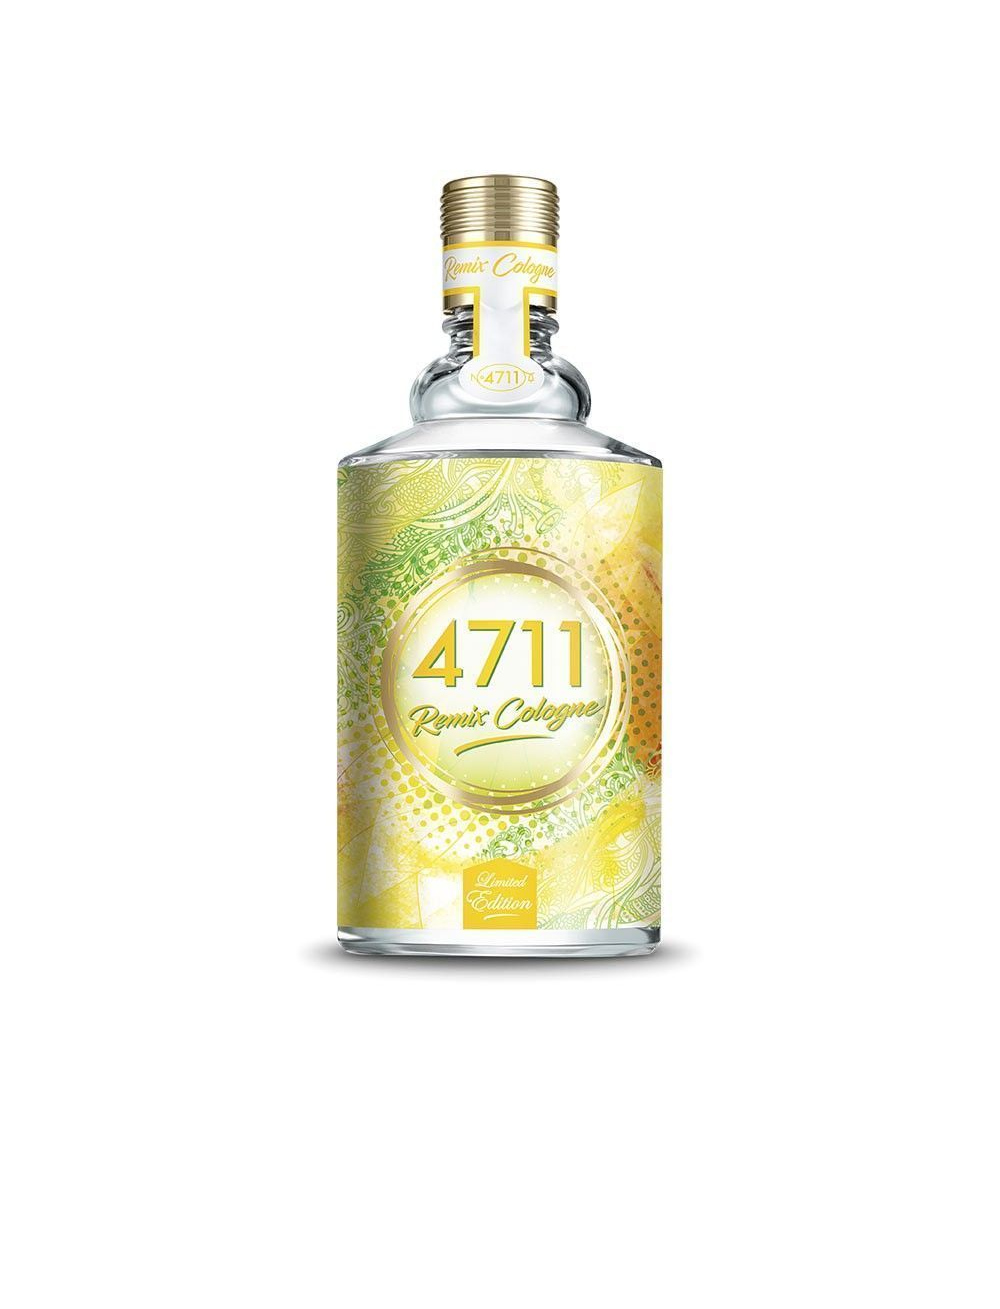 4711 remix cologne lemon edc spray 100 ml